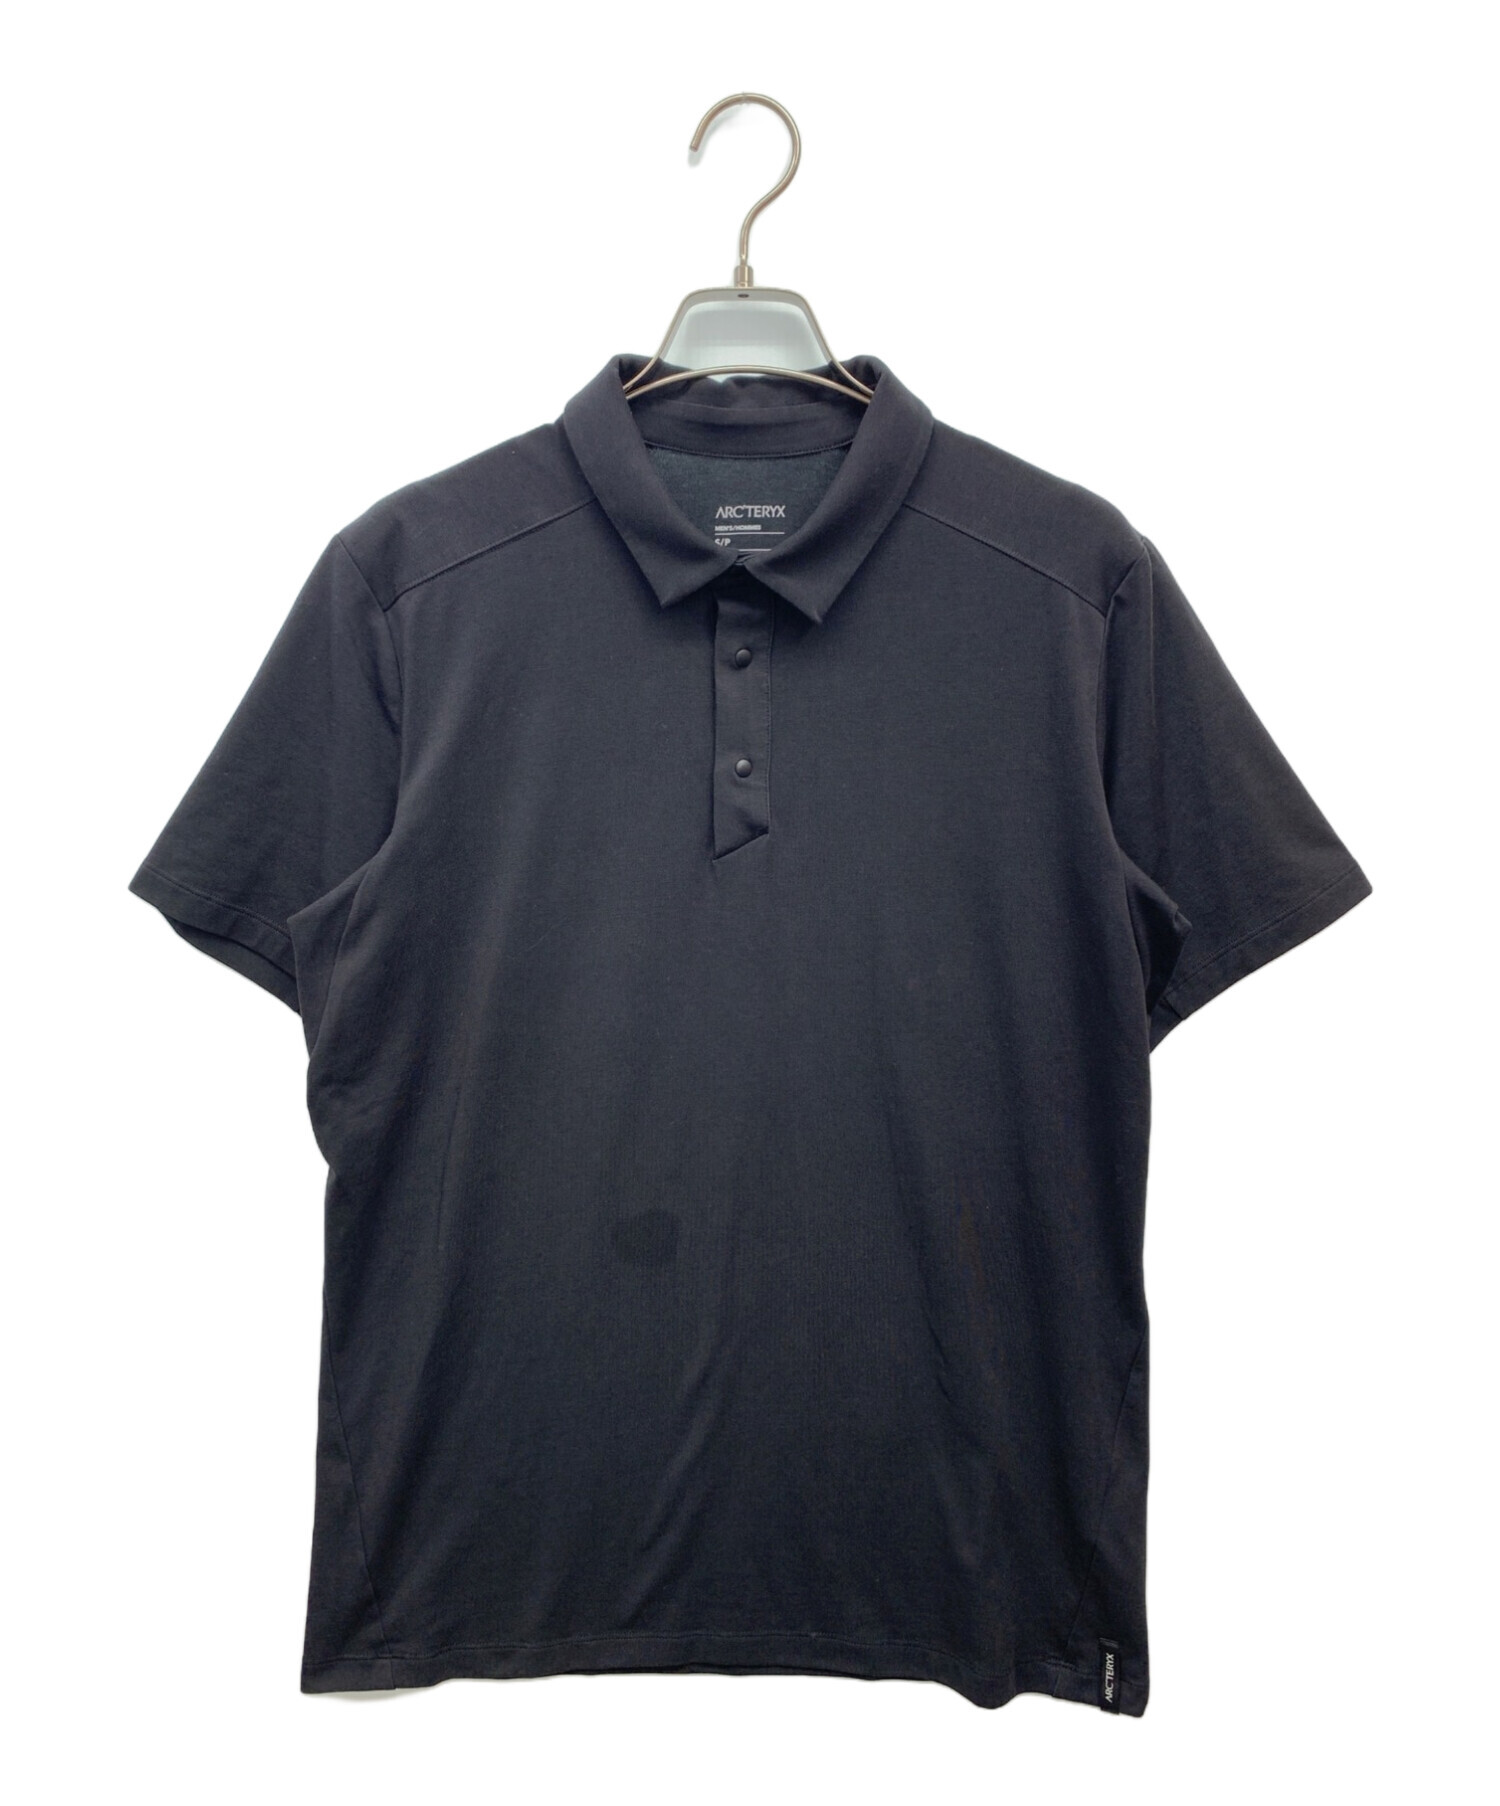 ARC'TERYX (アークテリクス) キャプティブ ポロシャツ ブラック サイズ:S